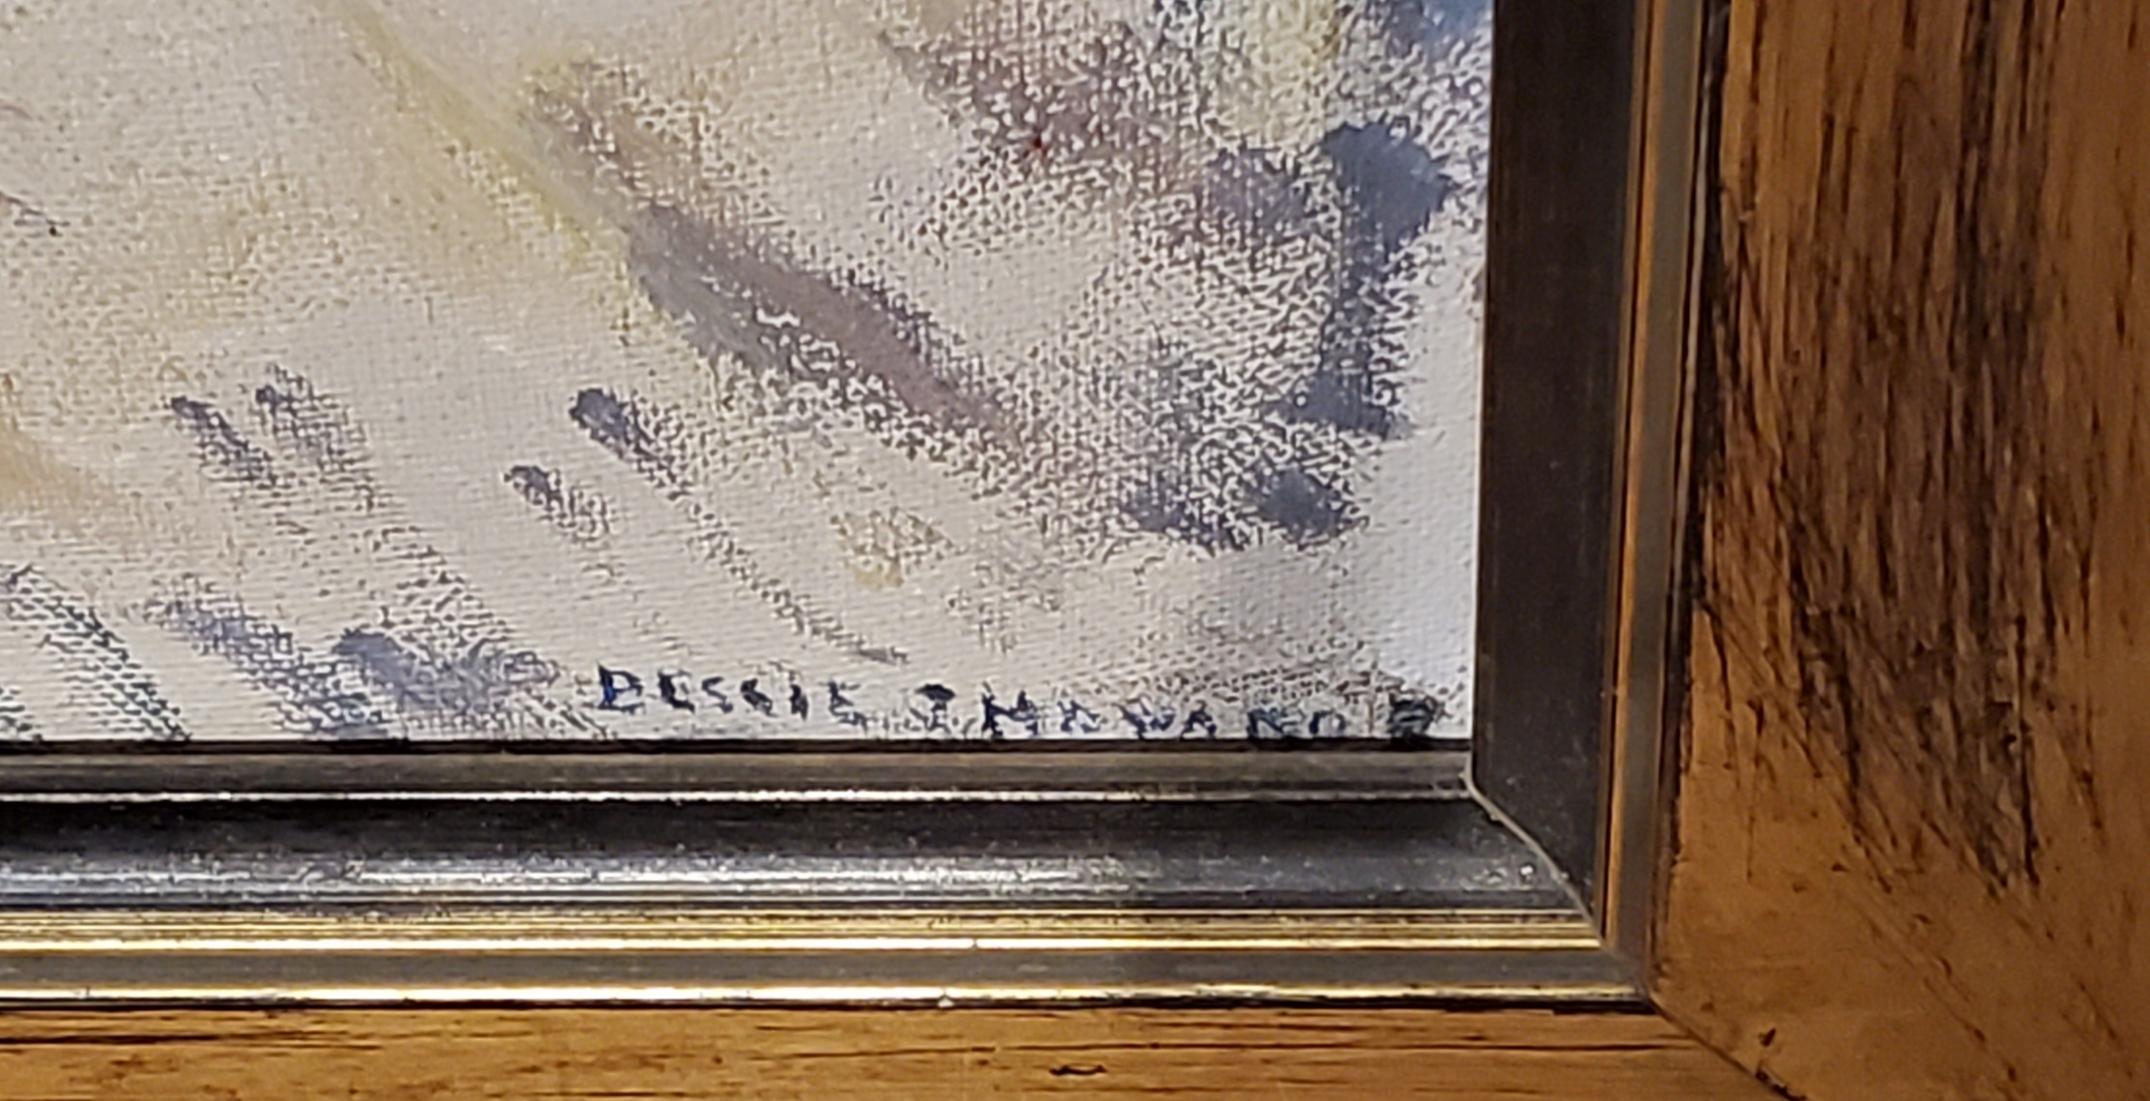 Bessie J. Howard, Américaine, (1890-1962)

Il s'agit d'une peinture à l'huile lumineuse et colorée d'un clown sur carton d'artiste et mesure 12 pouces de haut par 9 pouces de large. C'est signé dans le coin inférieur droit. Peint entre